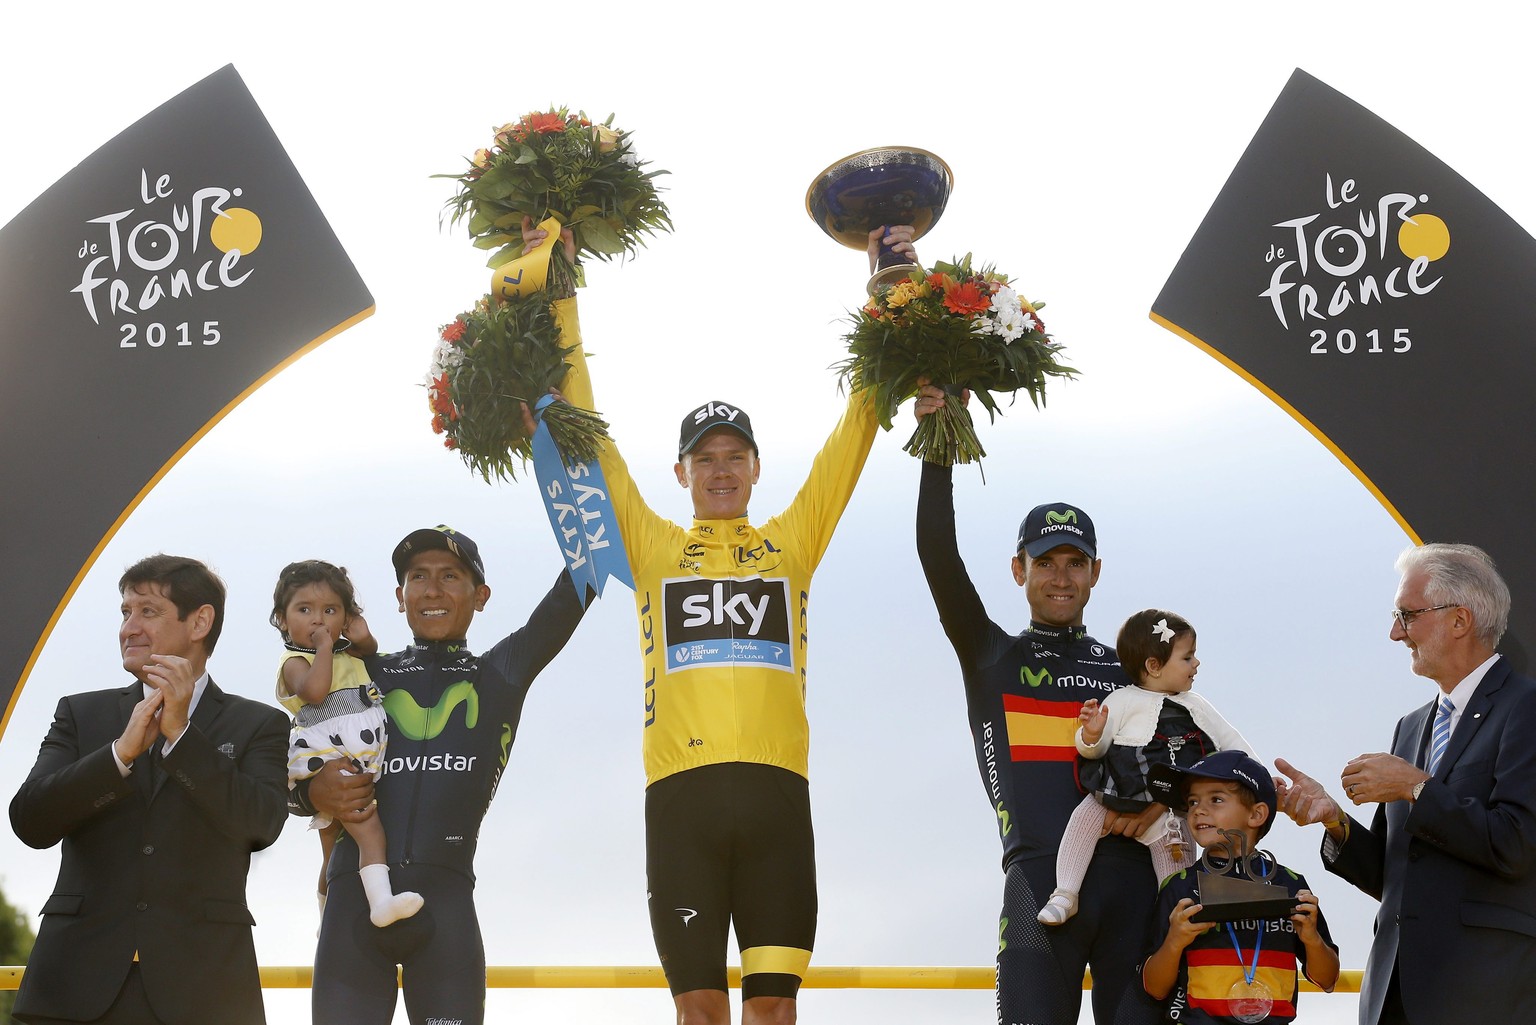 Die drei besten Fahrer der Tour bei der Siegerehrung: Froome, Quintana und Valverde.